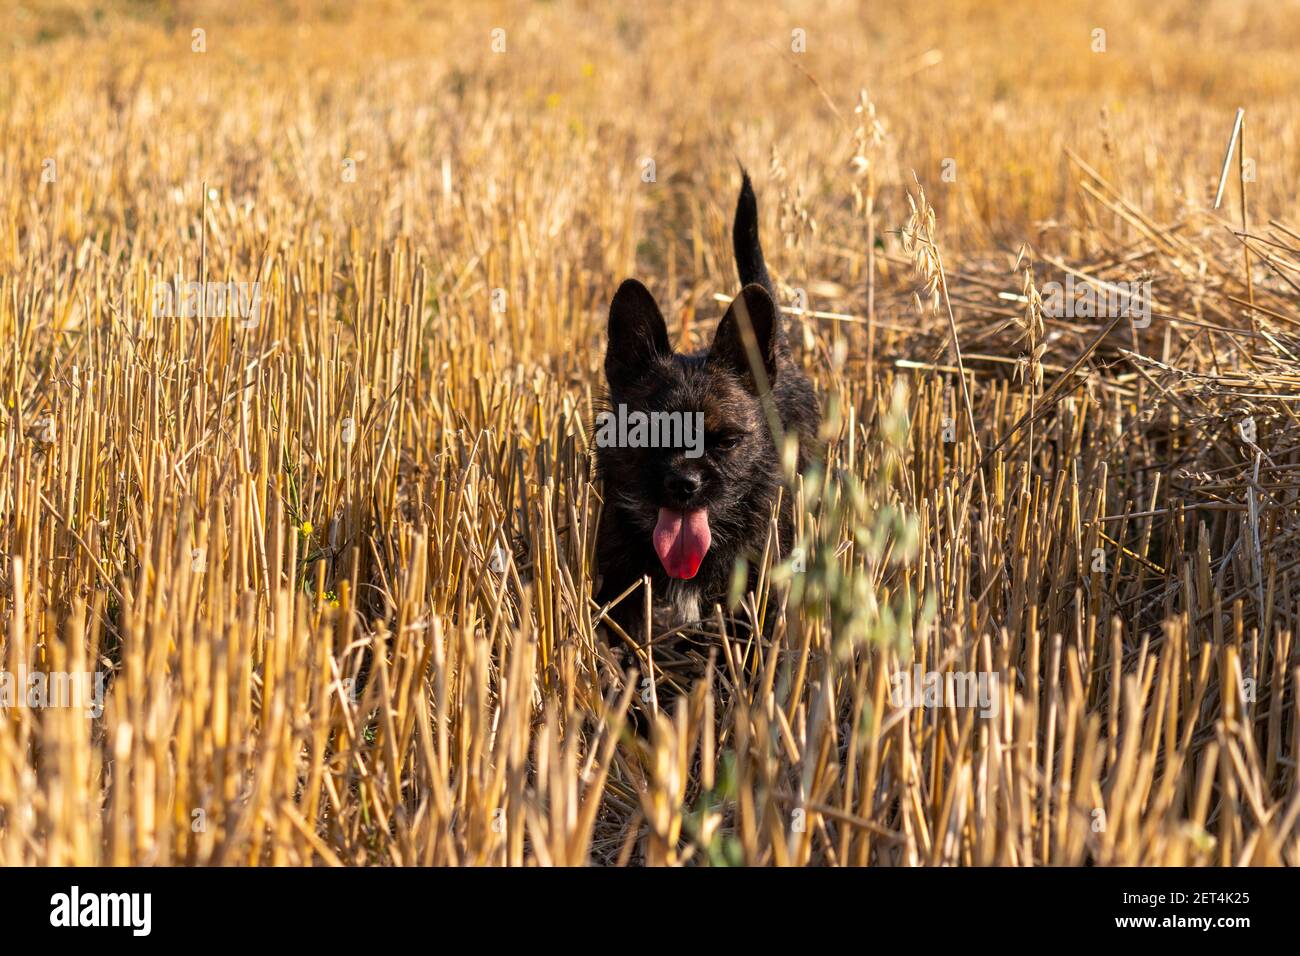 Der kleine schwarze Hund spielt im Stroh. Eine Mischung aus französischer Bulldogge mit Yorkshire Terrier, die auf dem Feld spielt. Porträt eines kleinen Hundes. Stockfoto